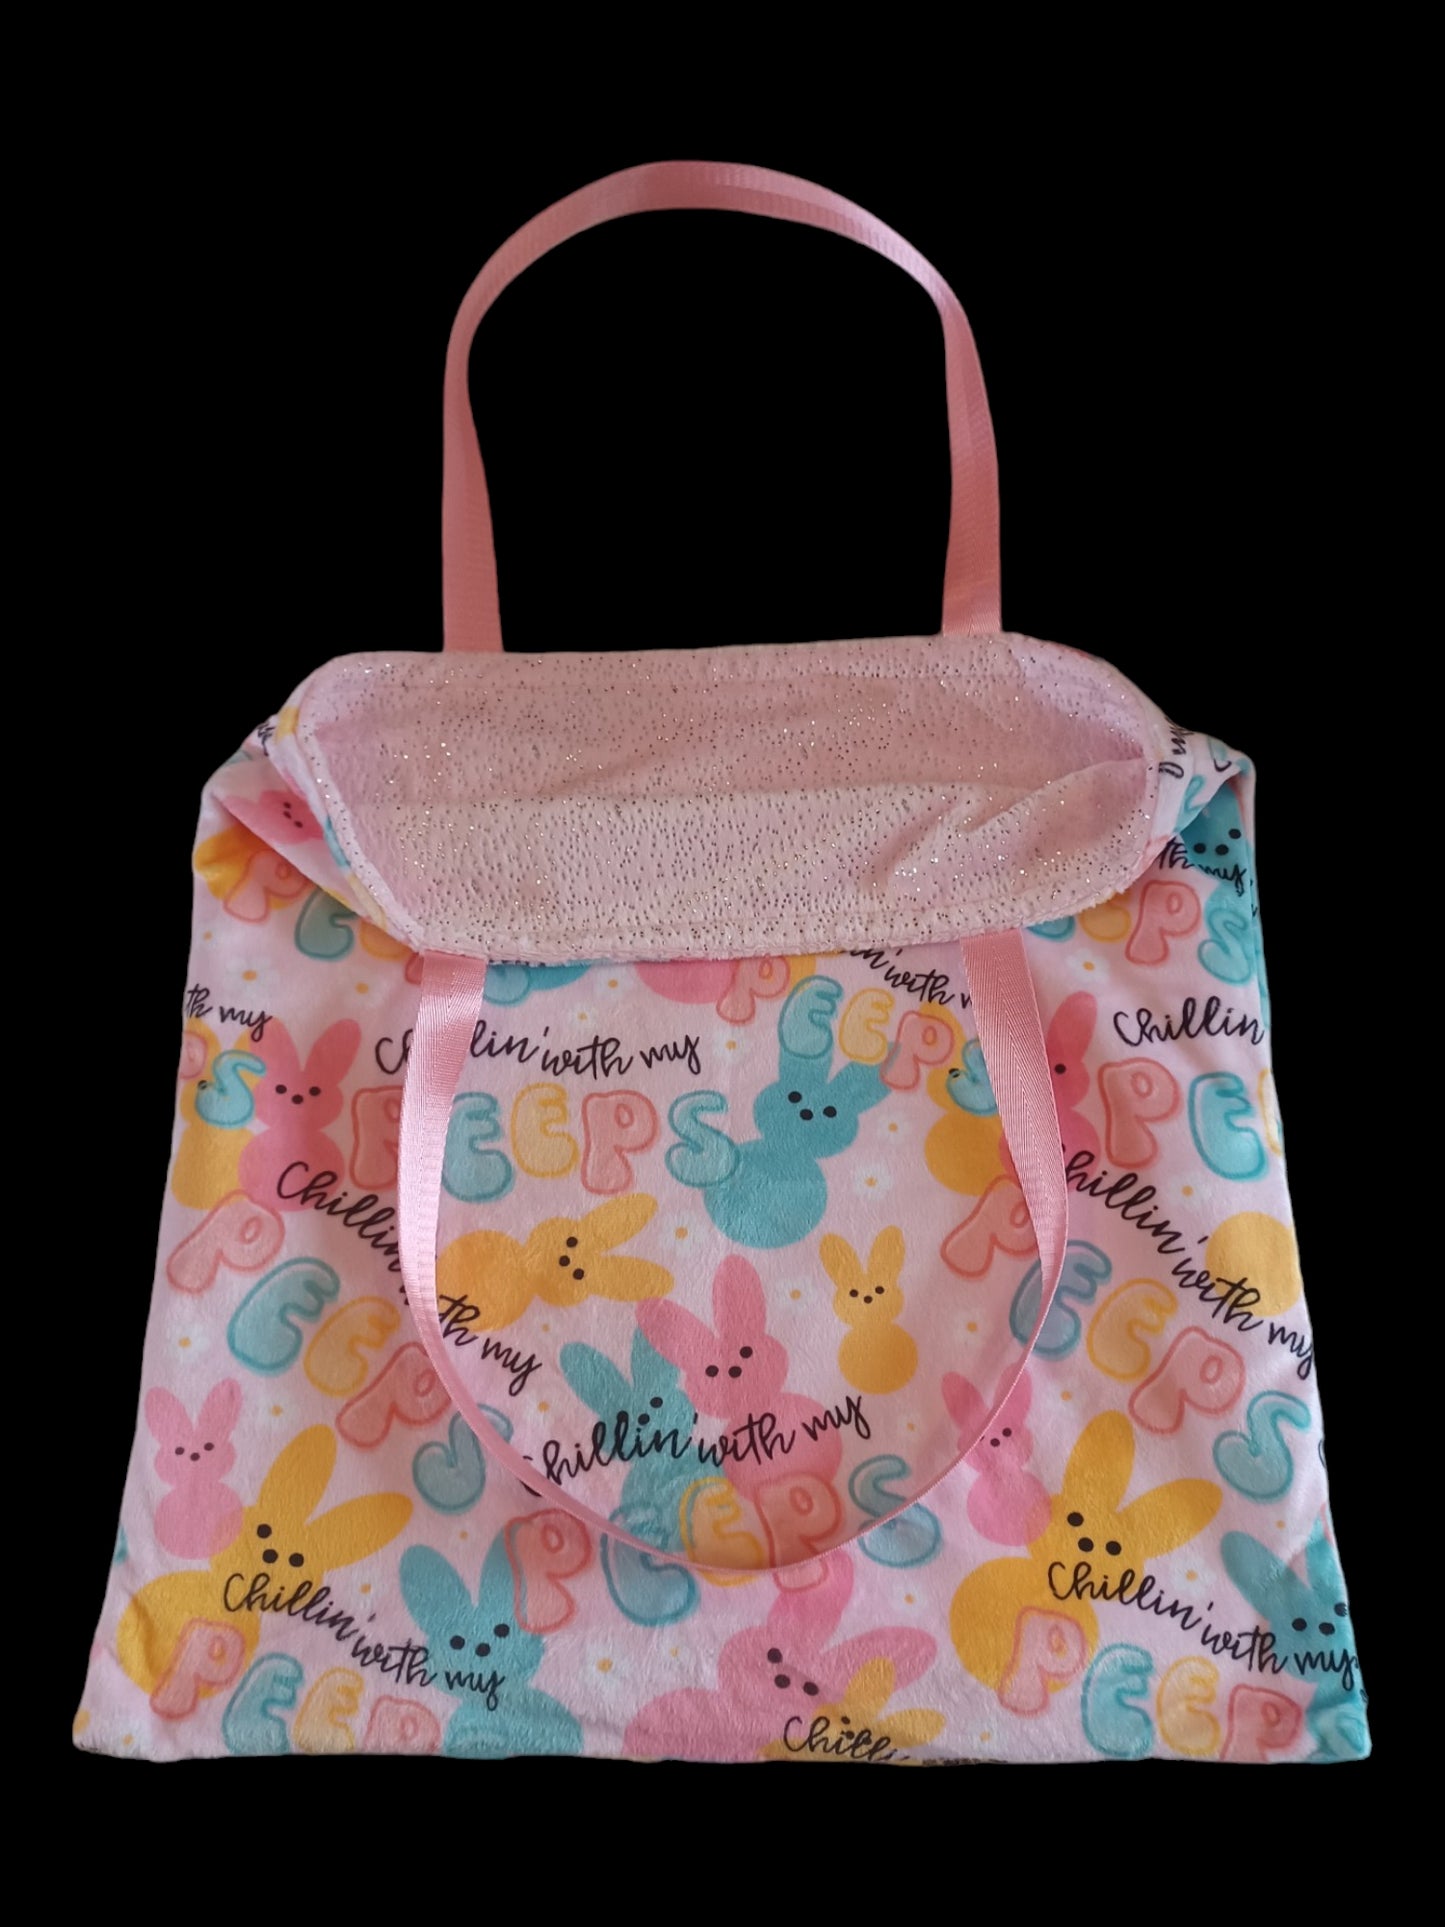 Adult bunny bag